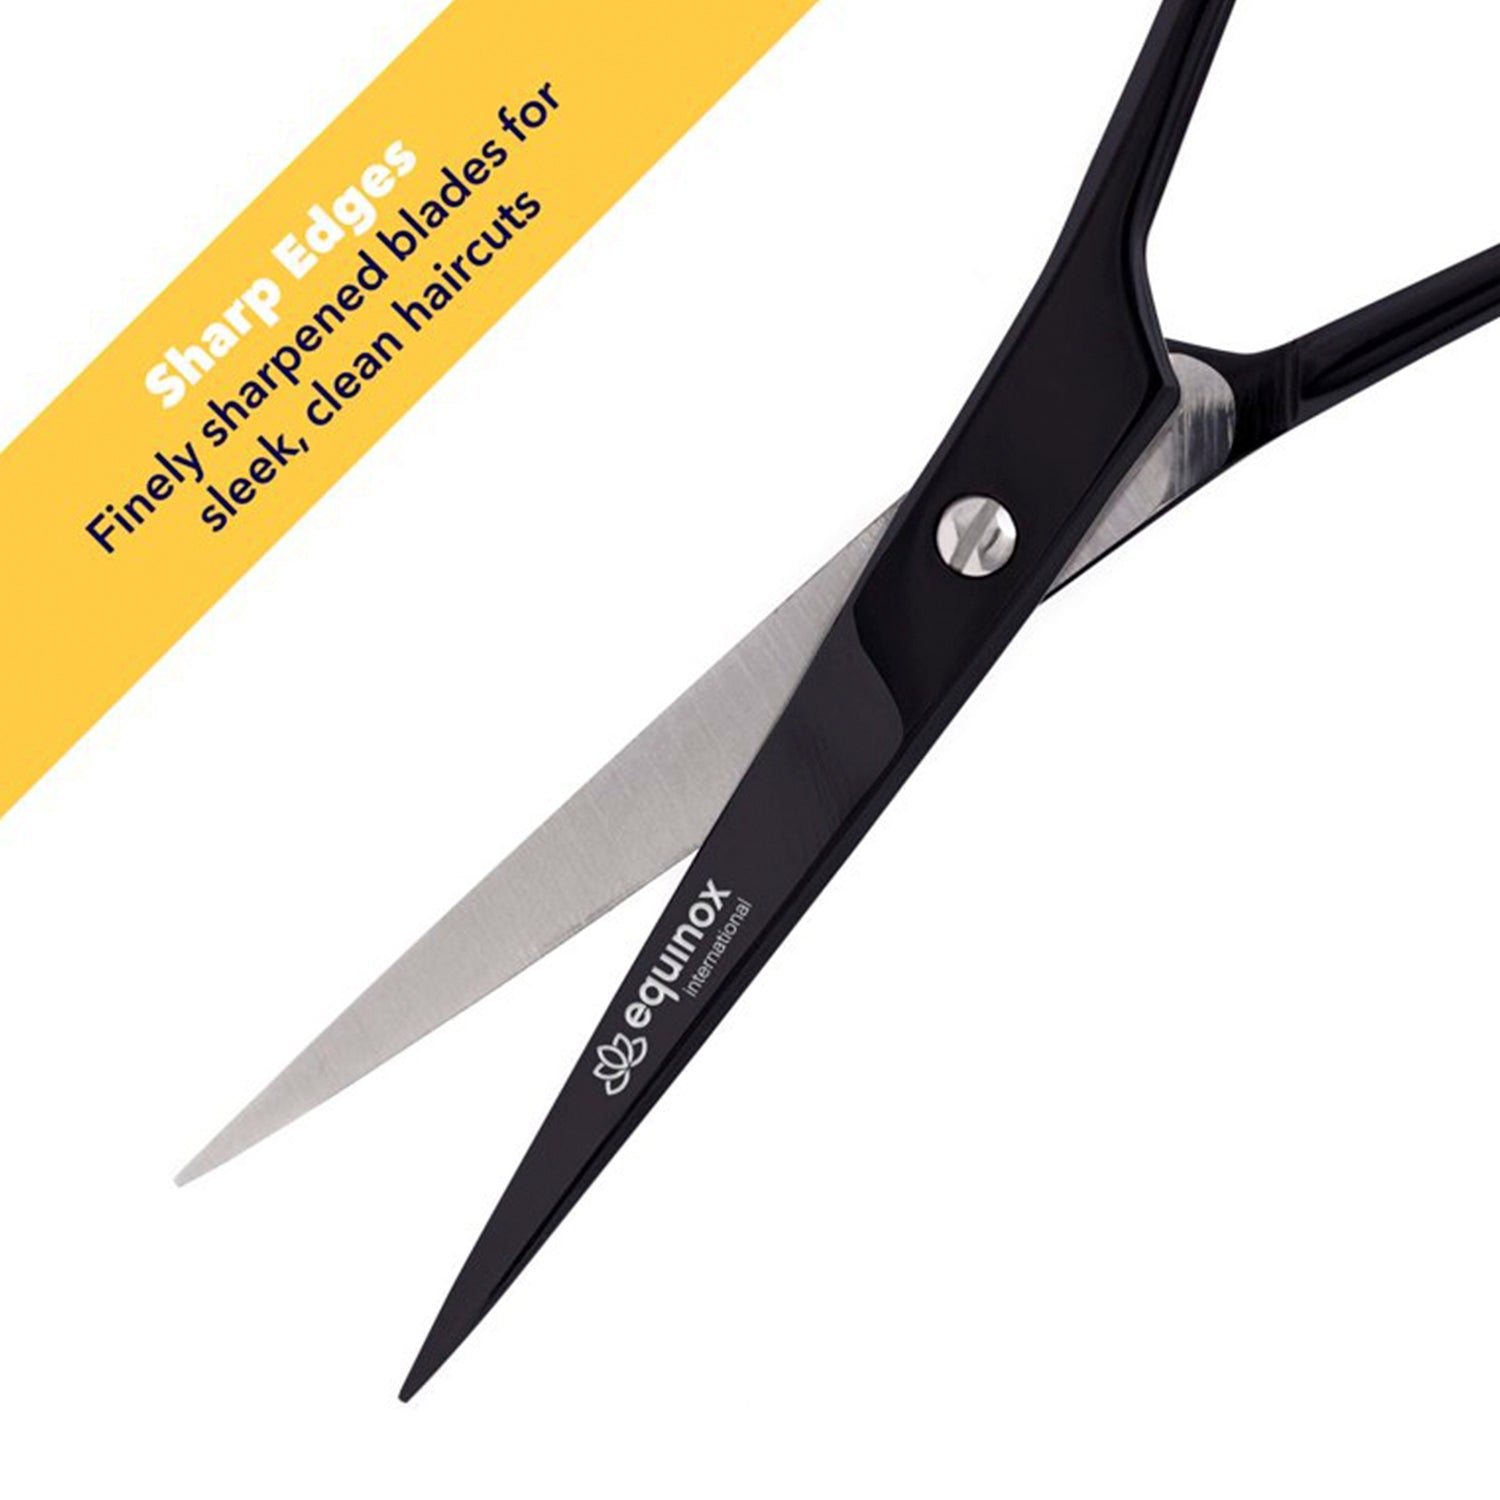 Equinox Professional Razor Edge Hair Cutting Scissor 6.5